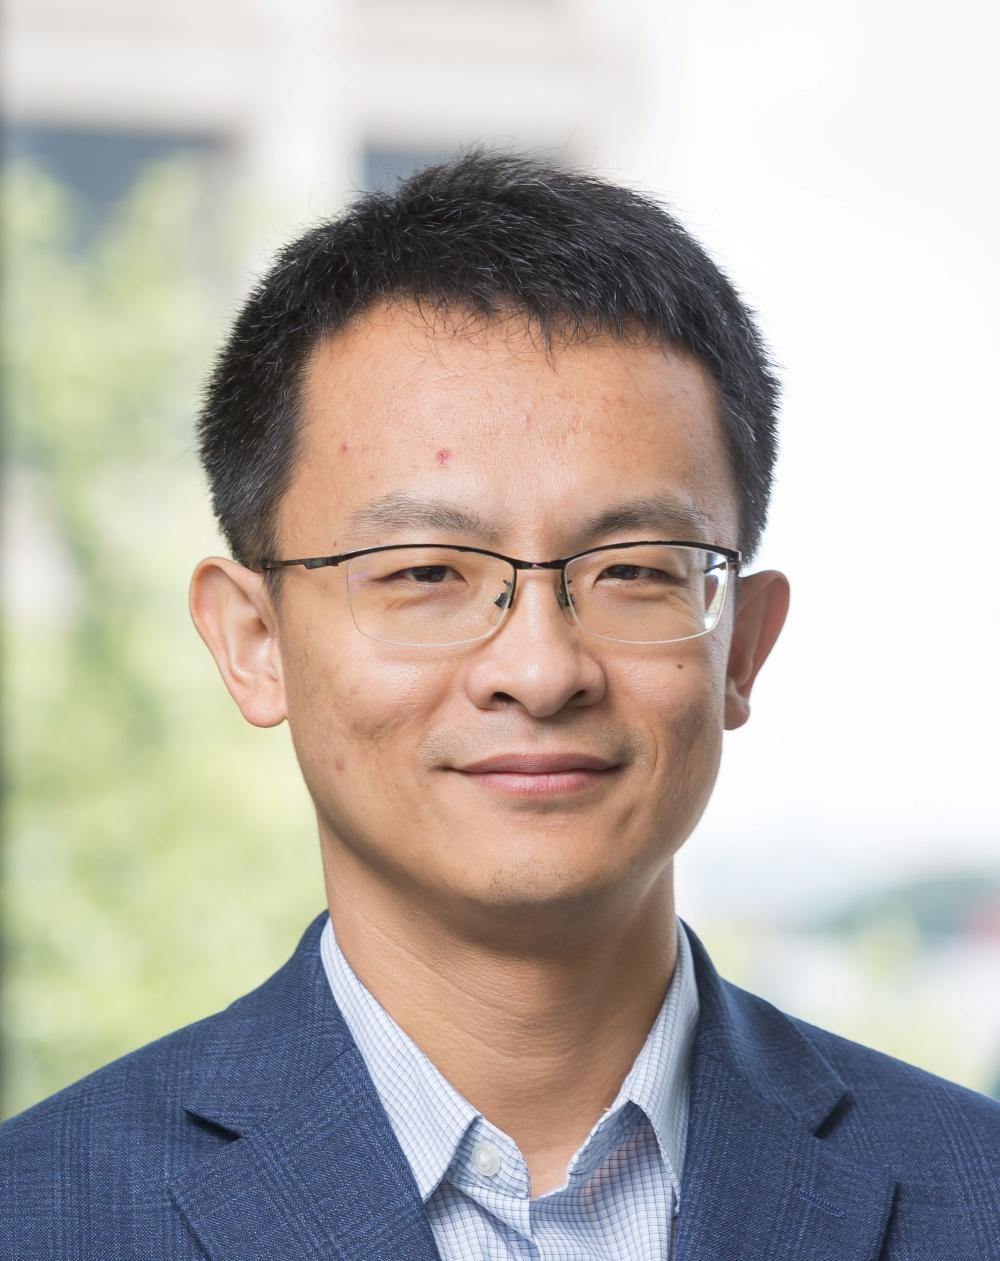 Jiaen Liu, Ph.D.
